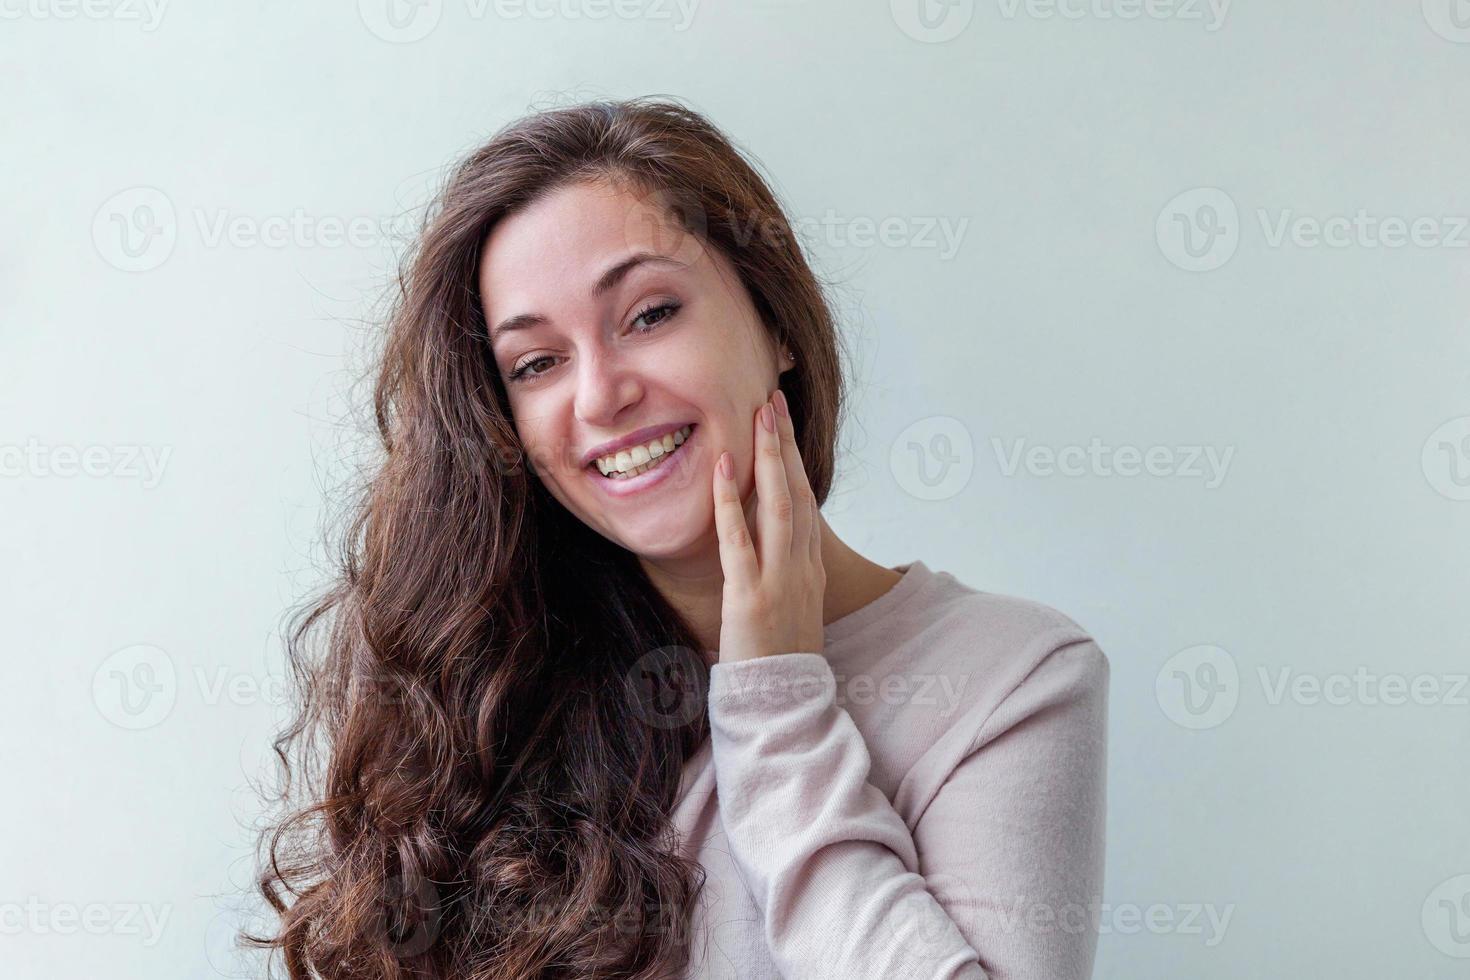 garota feliz sorrindo. beleza retrato jovem feliz positivo rindo morena mulher no fundo branco isolado. mulher europeia. linguagem corporal de expressão facial de emoção humana positiva. foto